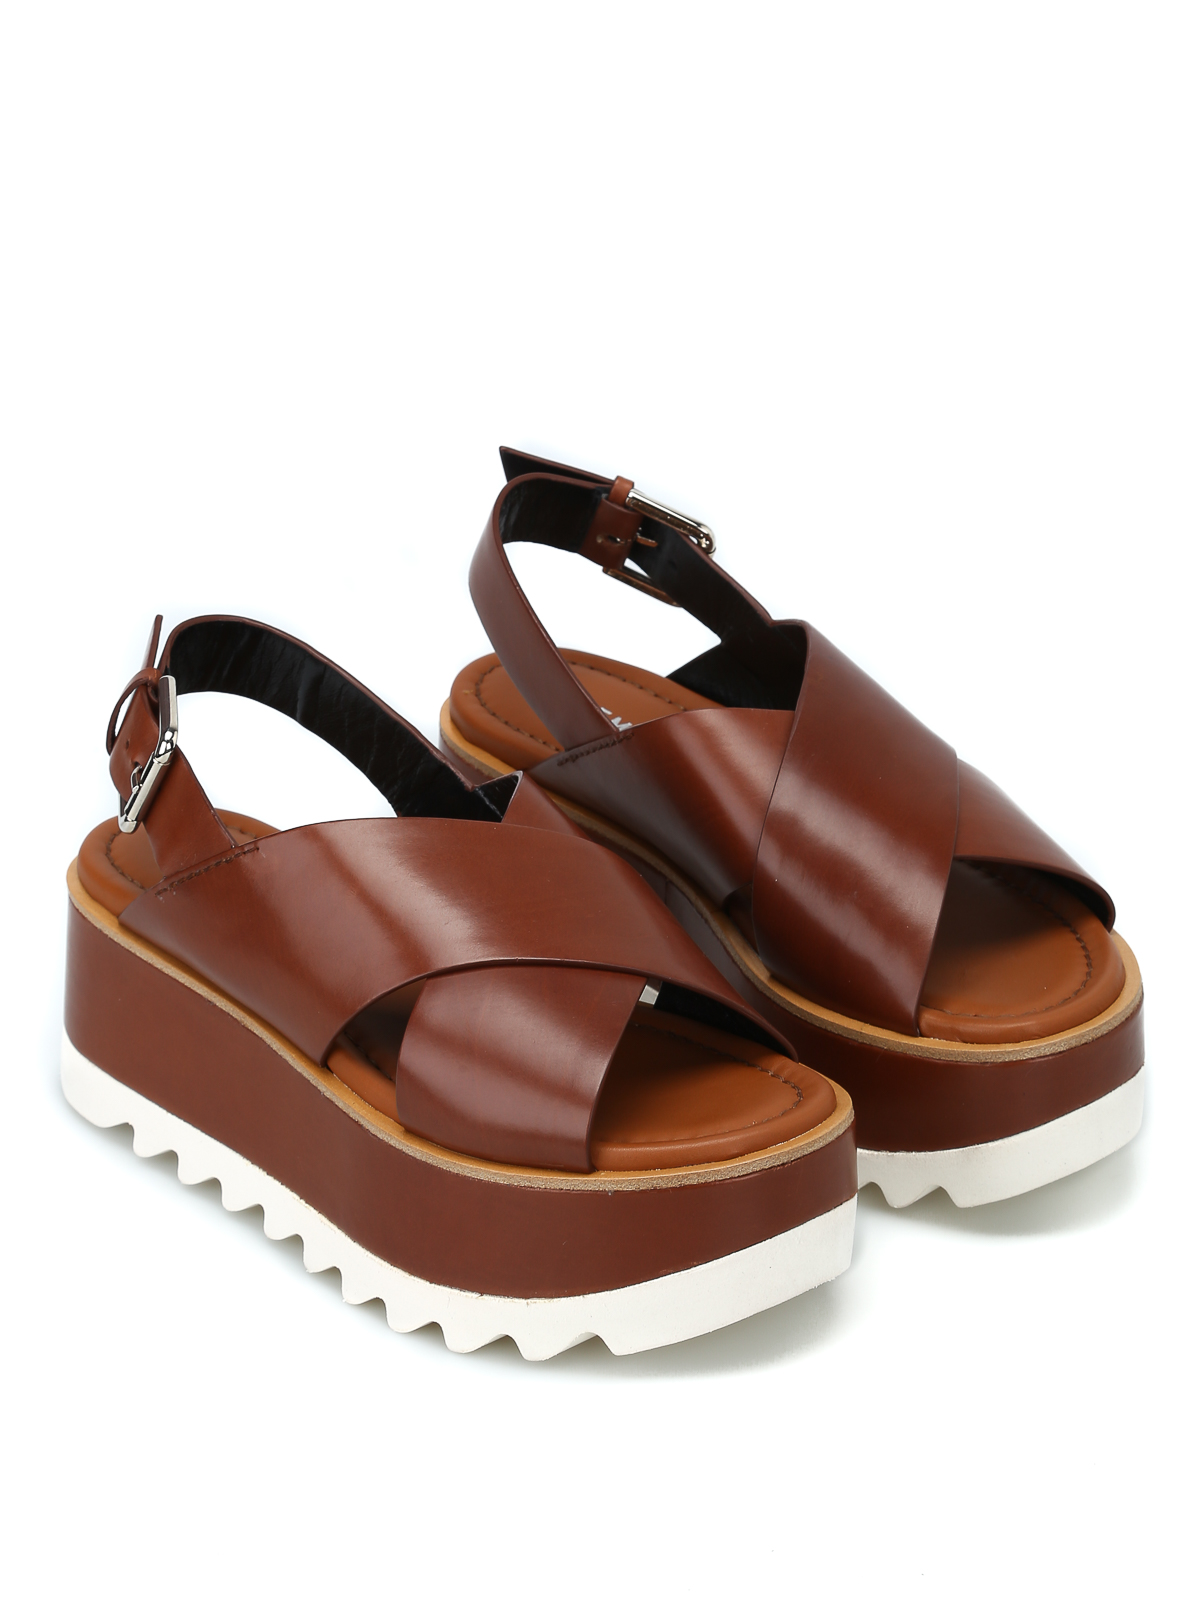 Premiata - Brown leather Vox platform sandals - sandals - M4721VOXCHOCOLATE